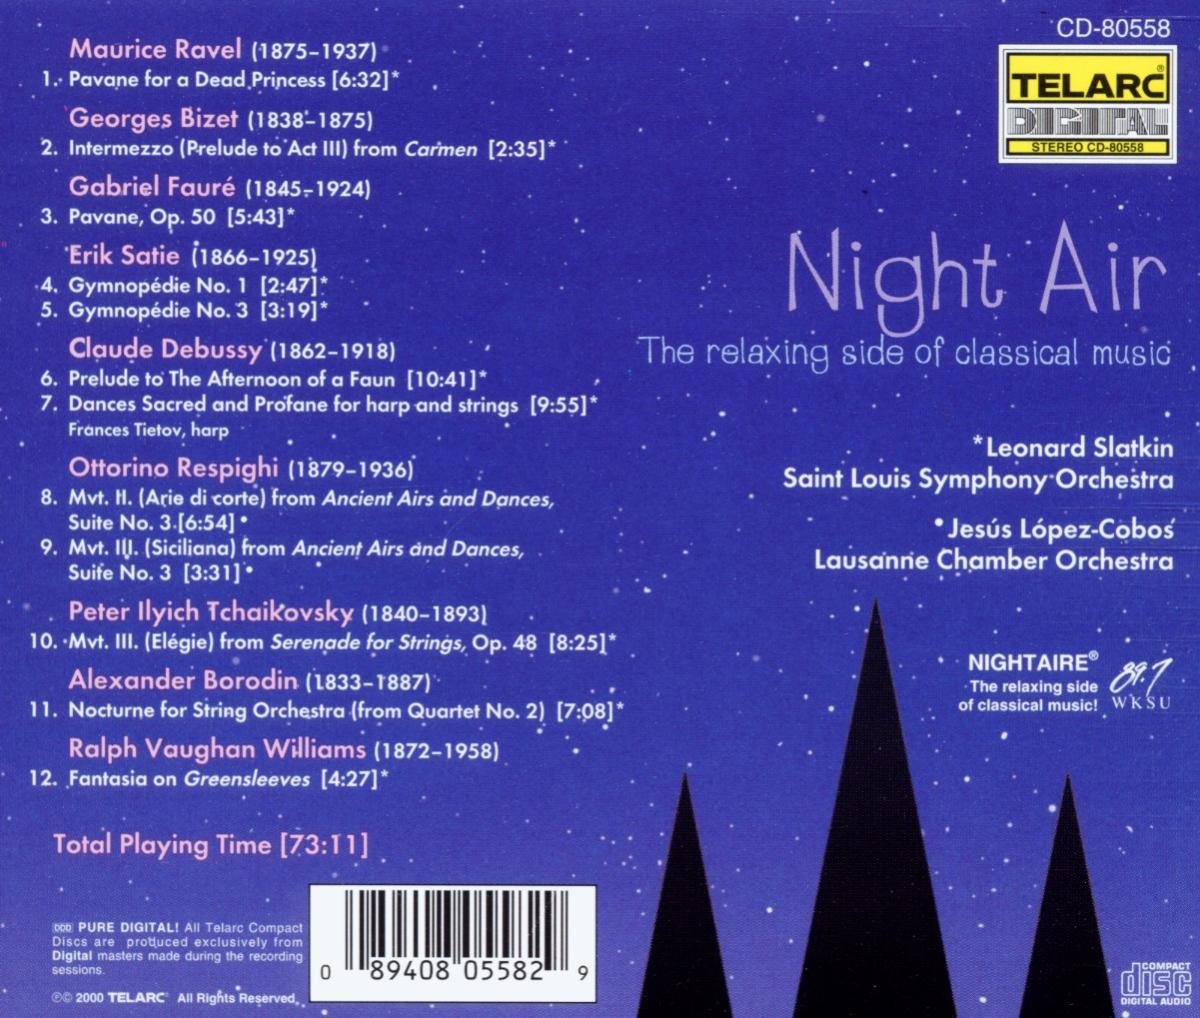 긴장을 풀어주는 클래식 음악 모음집 (Night Air - The Relaxing Side of Classical Music)